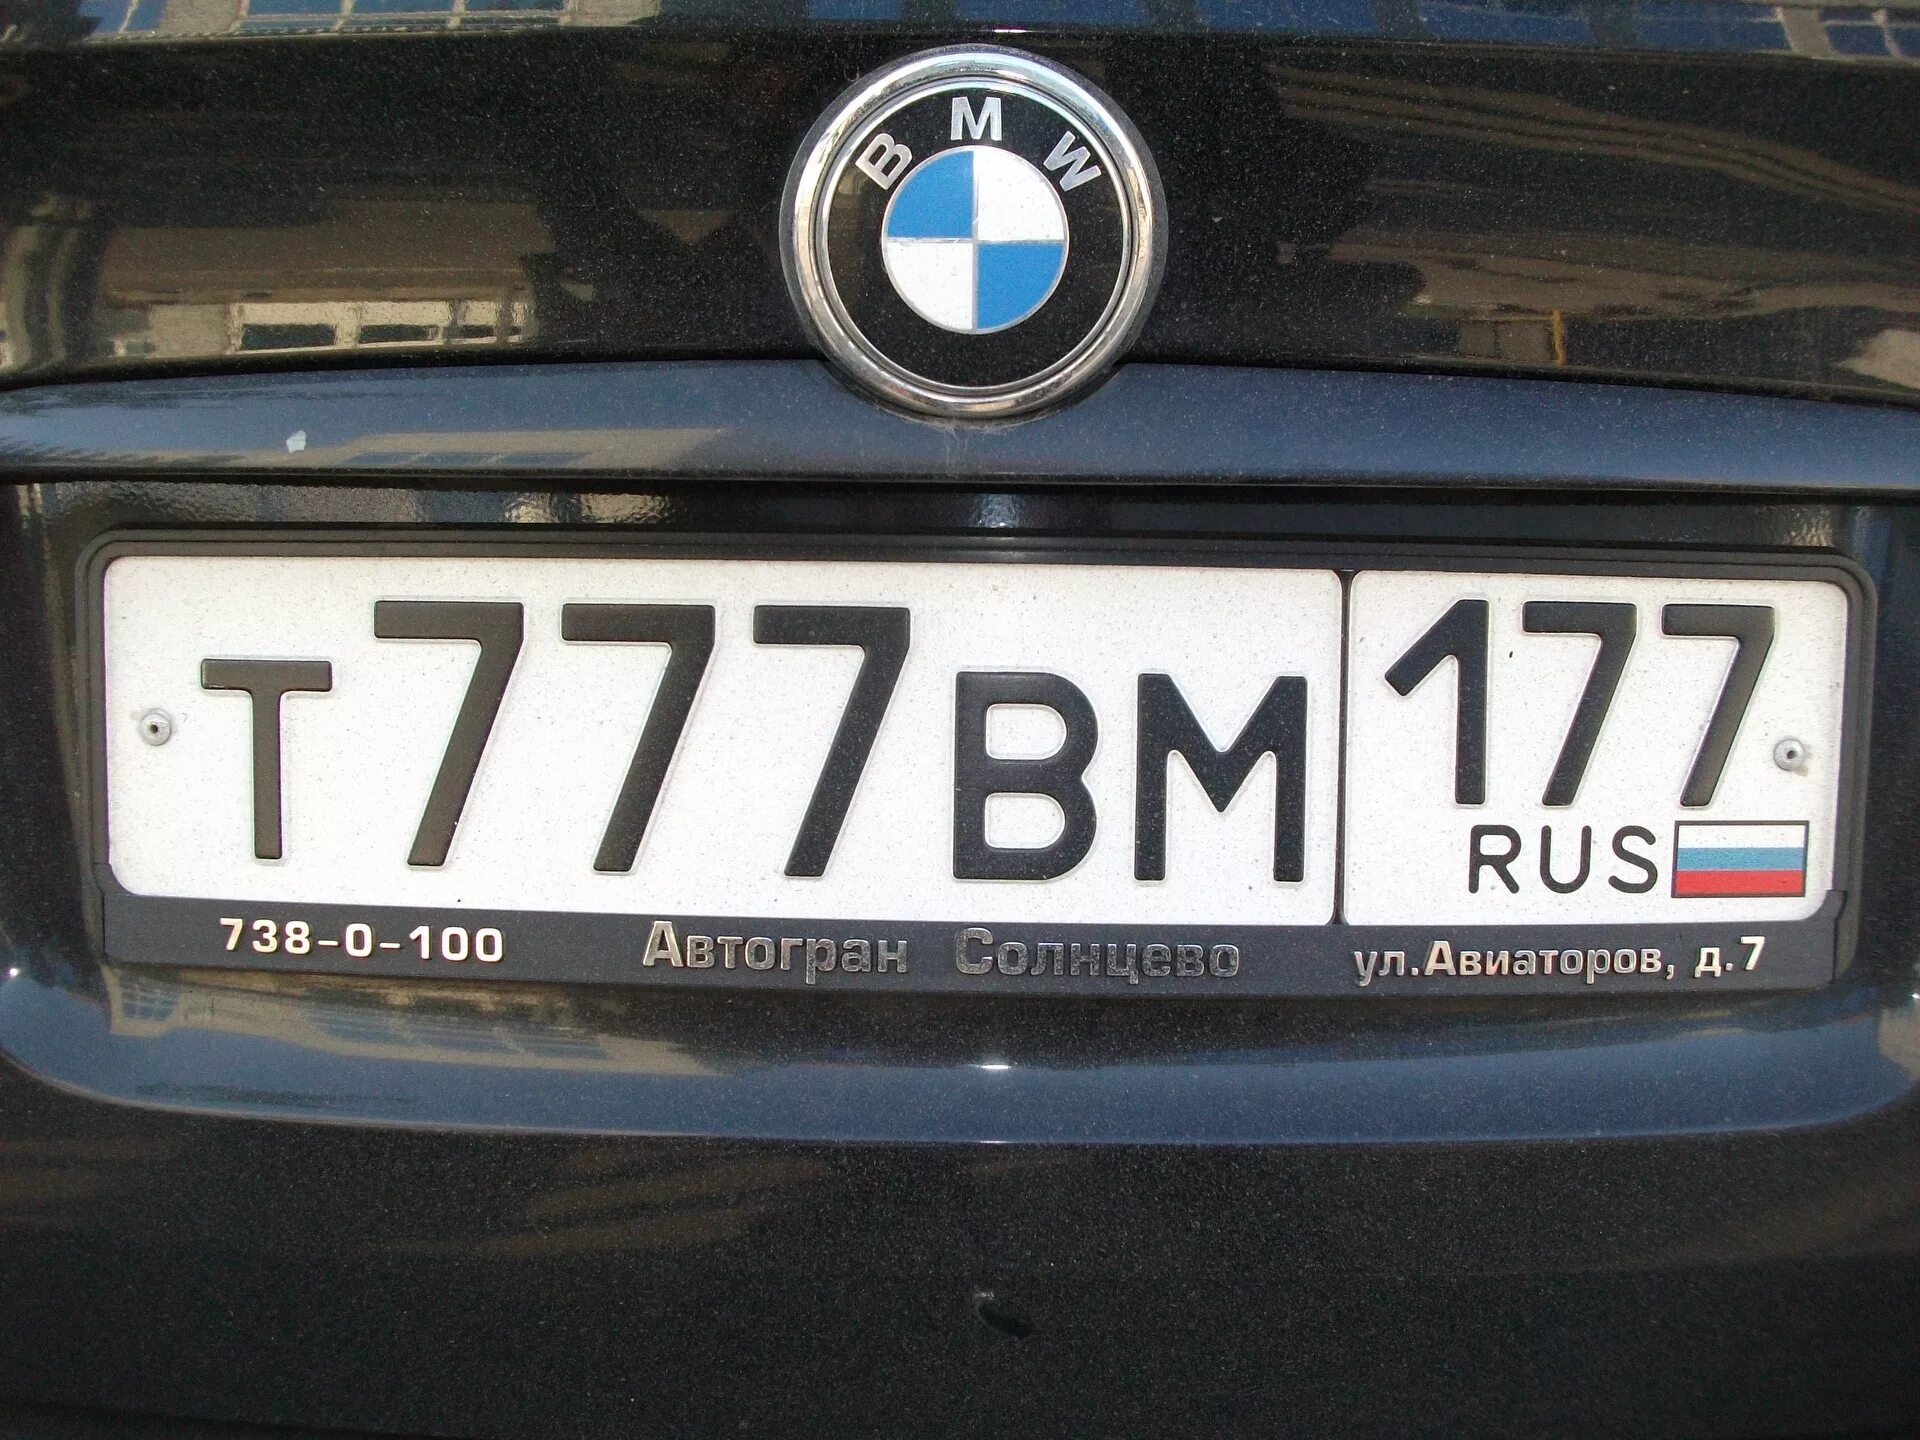 Номера машин. Номерной знак автомобиля. Российские номера. Российские номера машин.